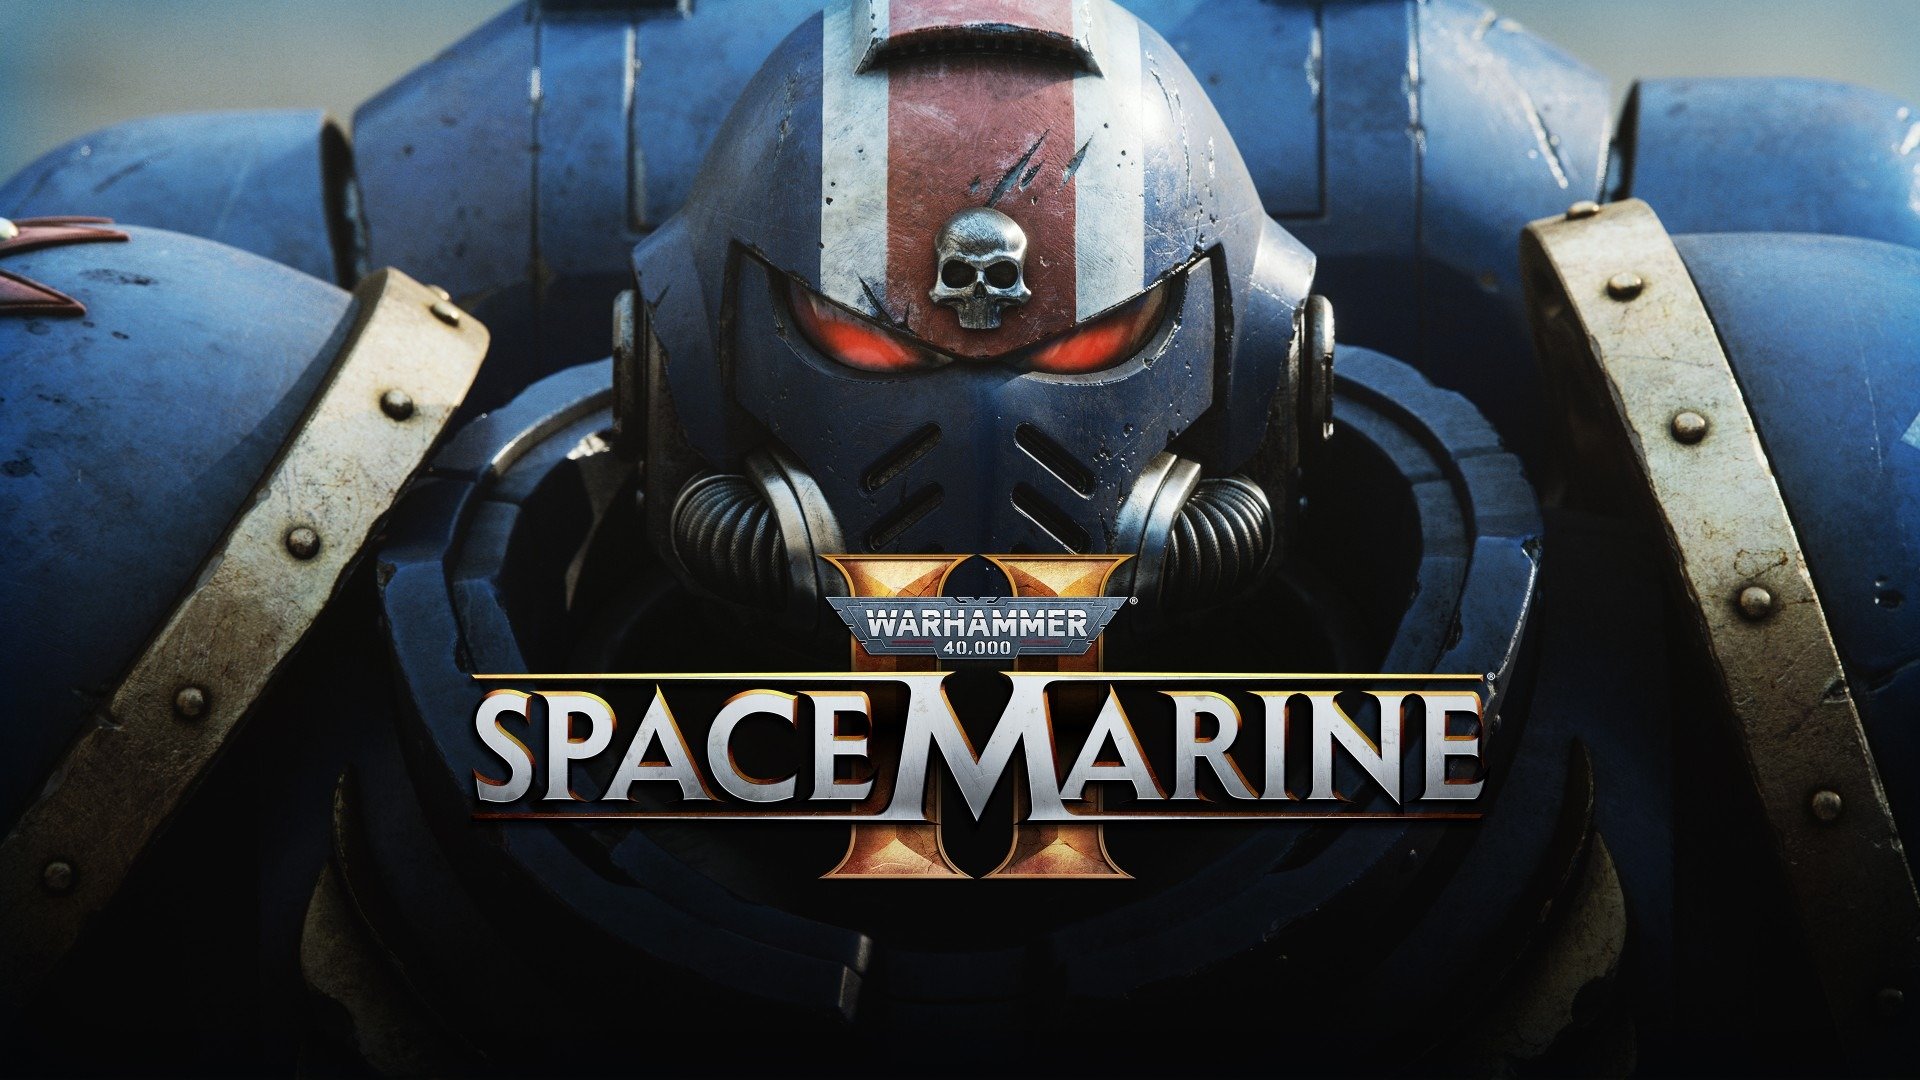 Warhammer Space Marine 2 : une surprise dévoilée avant l'heure qui plaira aux fans